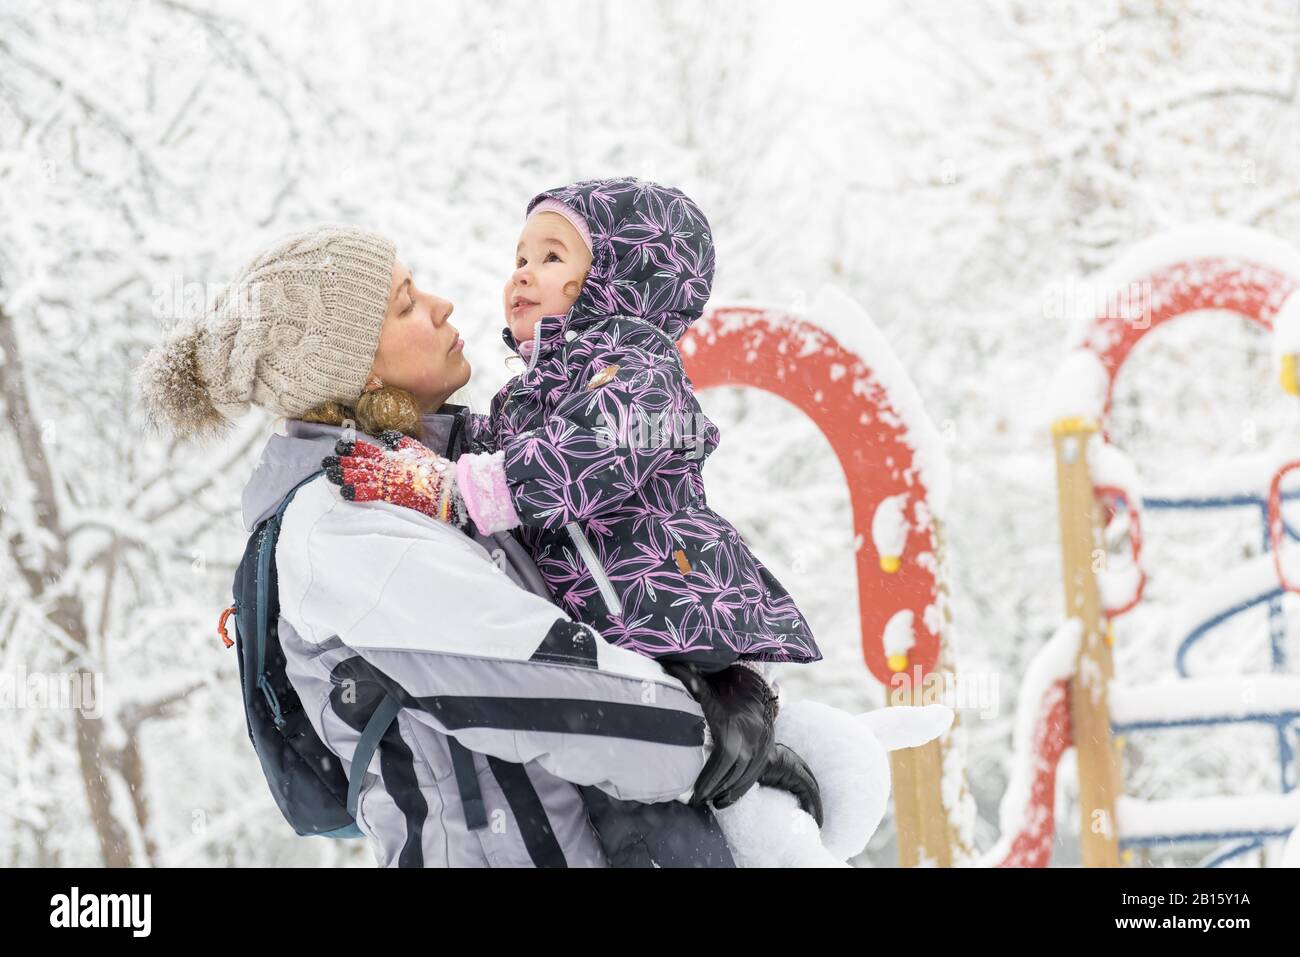 Un petit enfant joyeux joue avec la mère dans un parc enneigé en hiver. De bonnes promenades en famille pendant la chute de neige. Jolie fille de bébé se trouve sur les mains de la mère. Banque D'Images